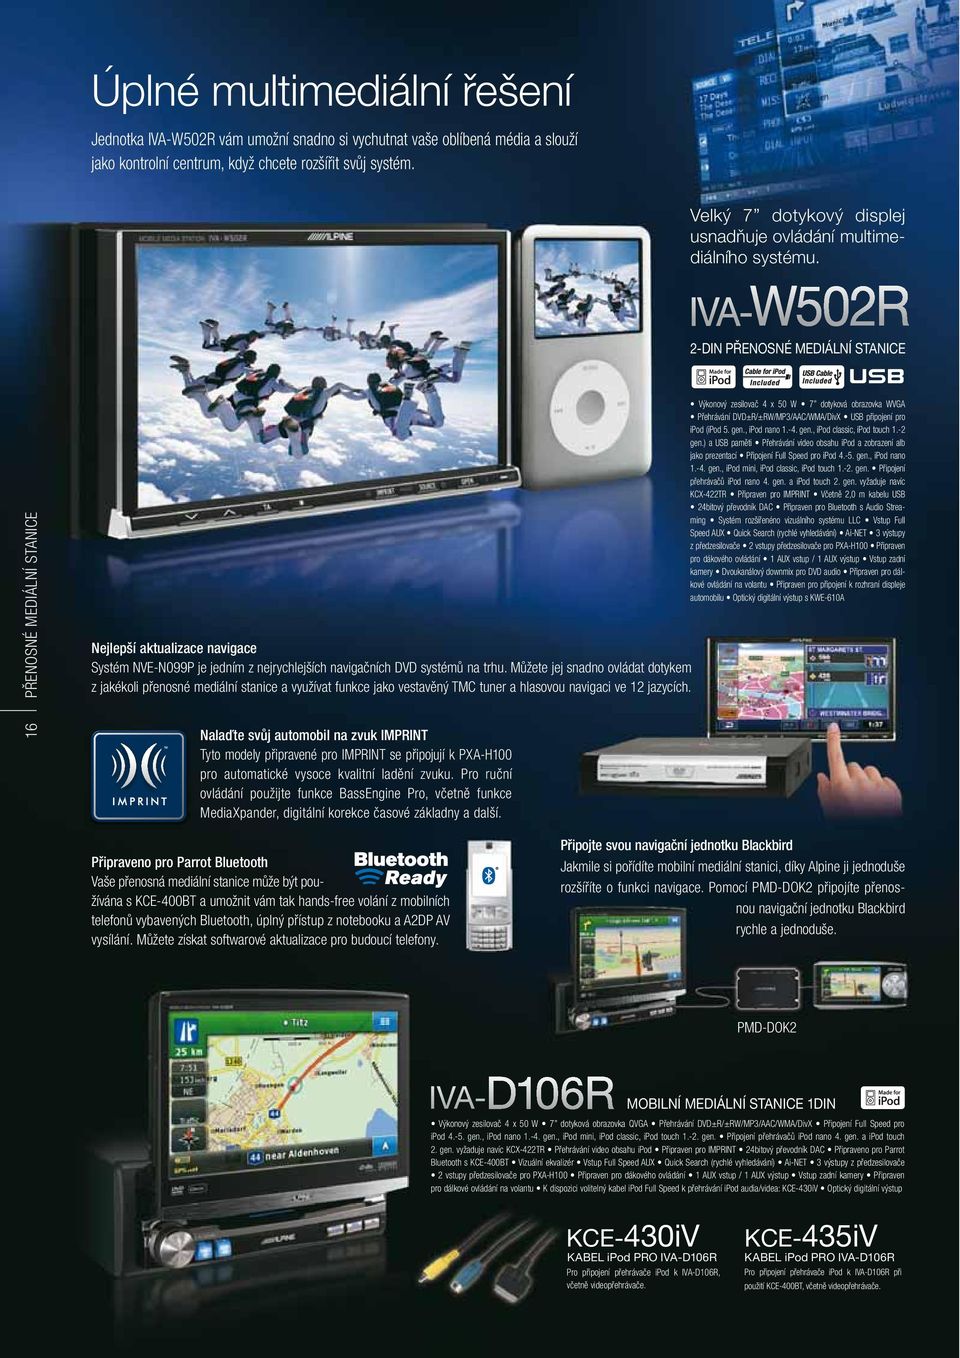 2-DIN PŘENOSNÉ MEDIÁLNÍ STANICE 16 PŘENOSNÉ MEDIÁLNÍ STANICE Nejlepší aktualizace navigace Systém NVE-N099P je jedním z nejrychlejších navigačních DVD systémů na trhu.